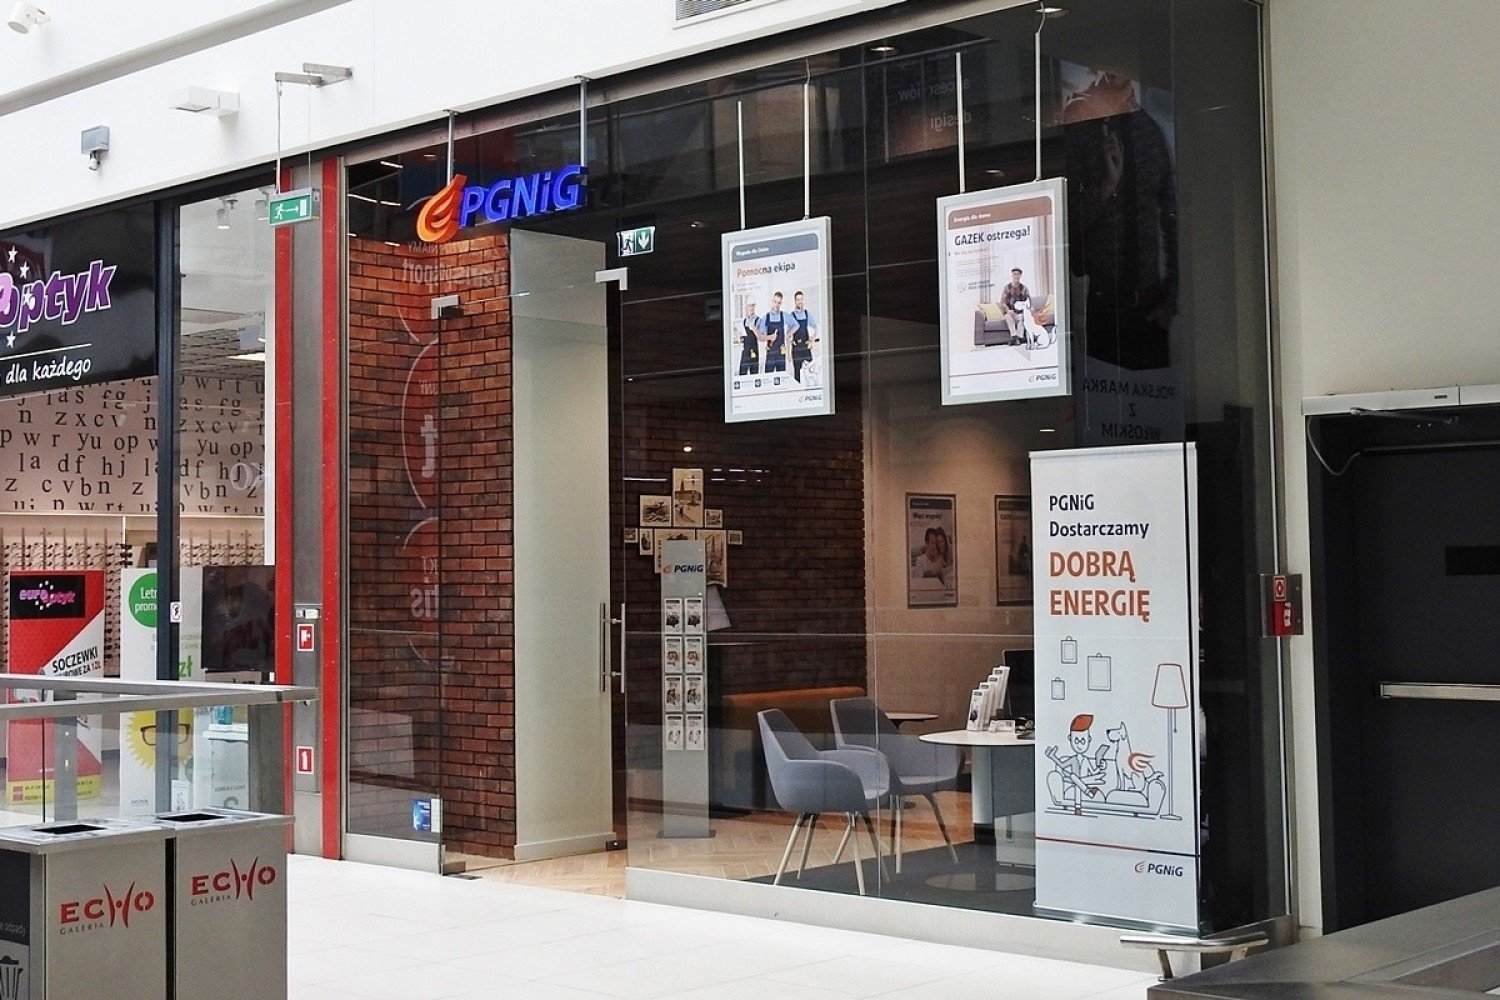 Biuro Obsługi Klienta PGNIG powstało w Galerii Echo w Kielcach | Kielce  Nasze Miasto